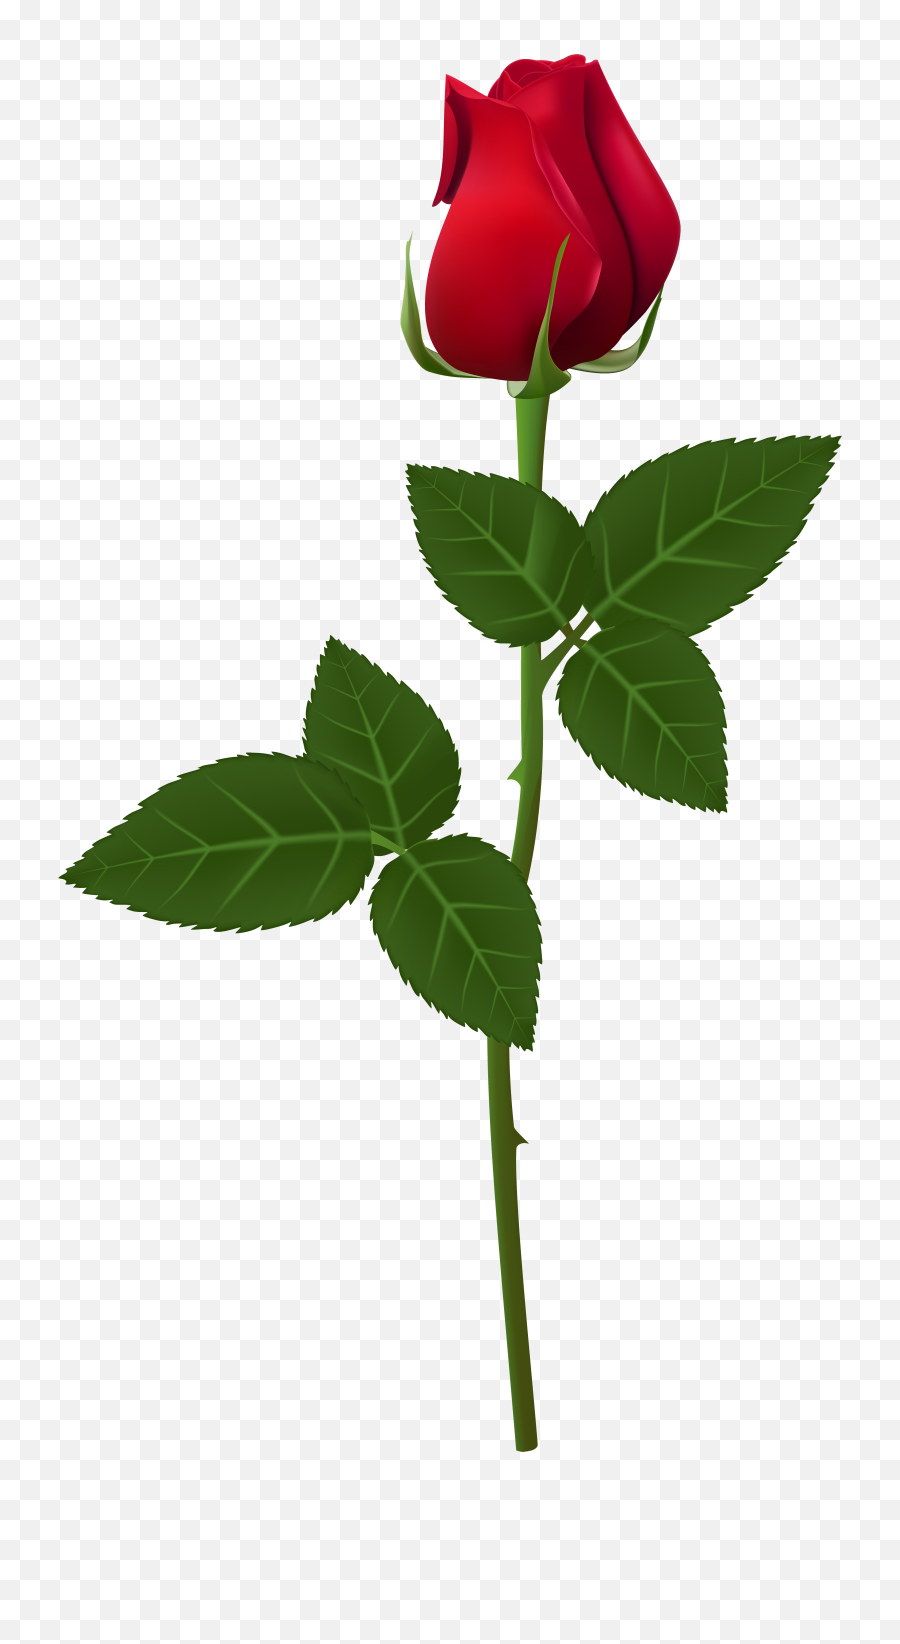 Rose Png Flower Images Free Download - Transparent Background Rose Png,Real Rose Png